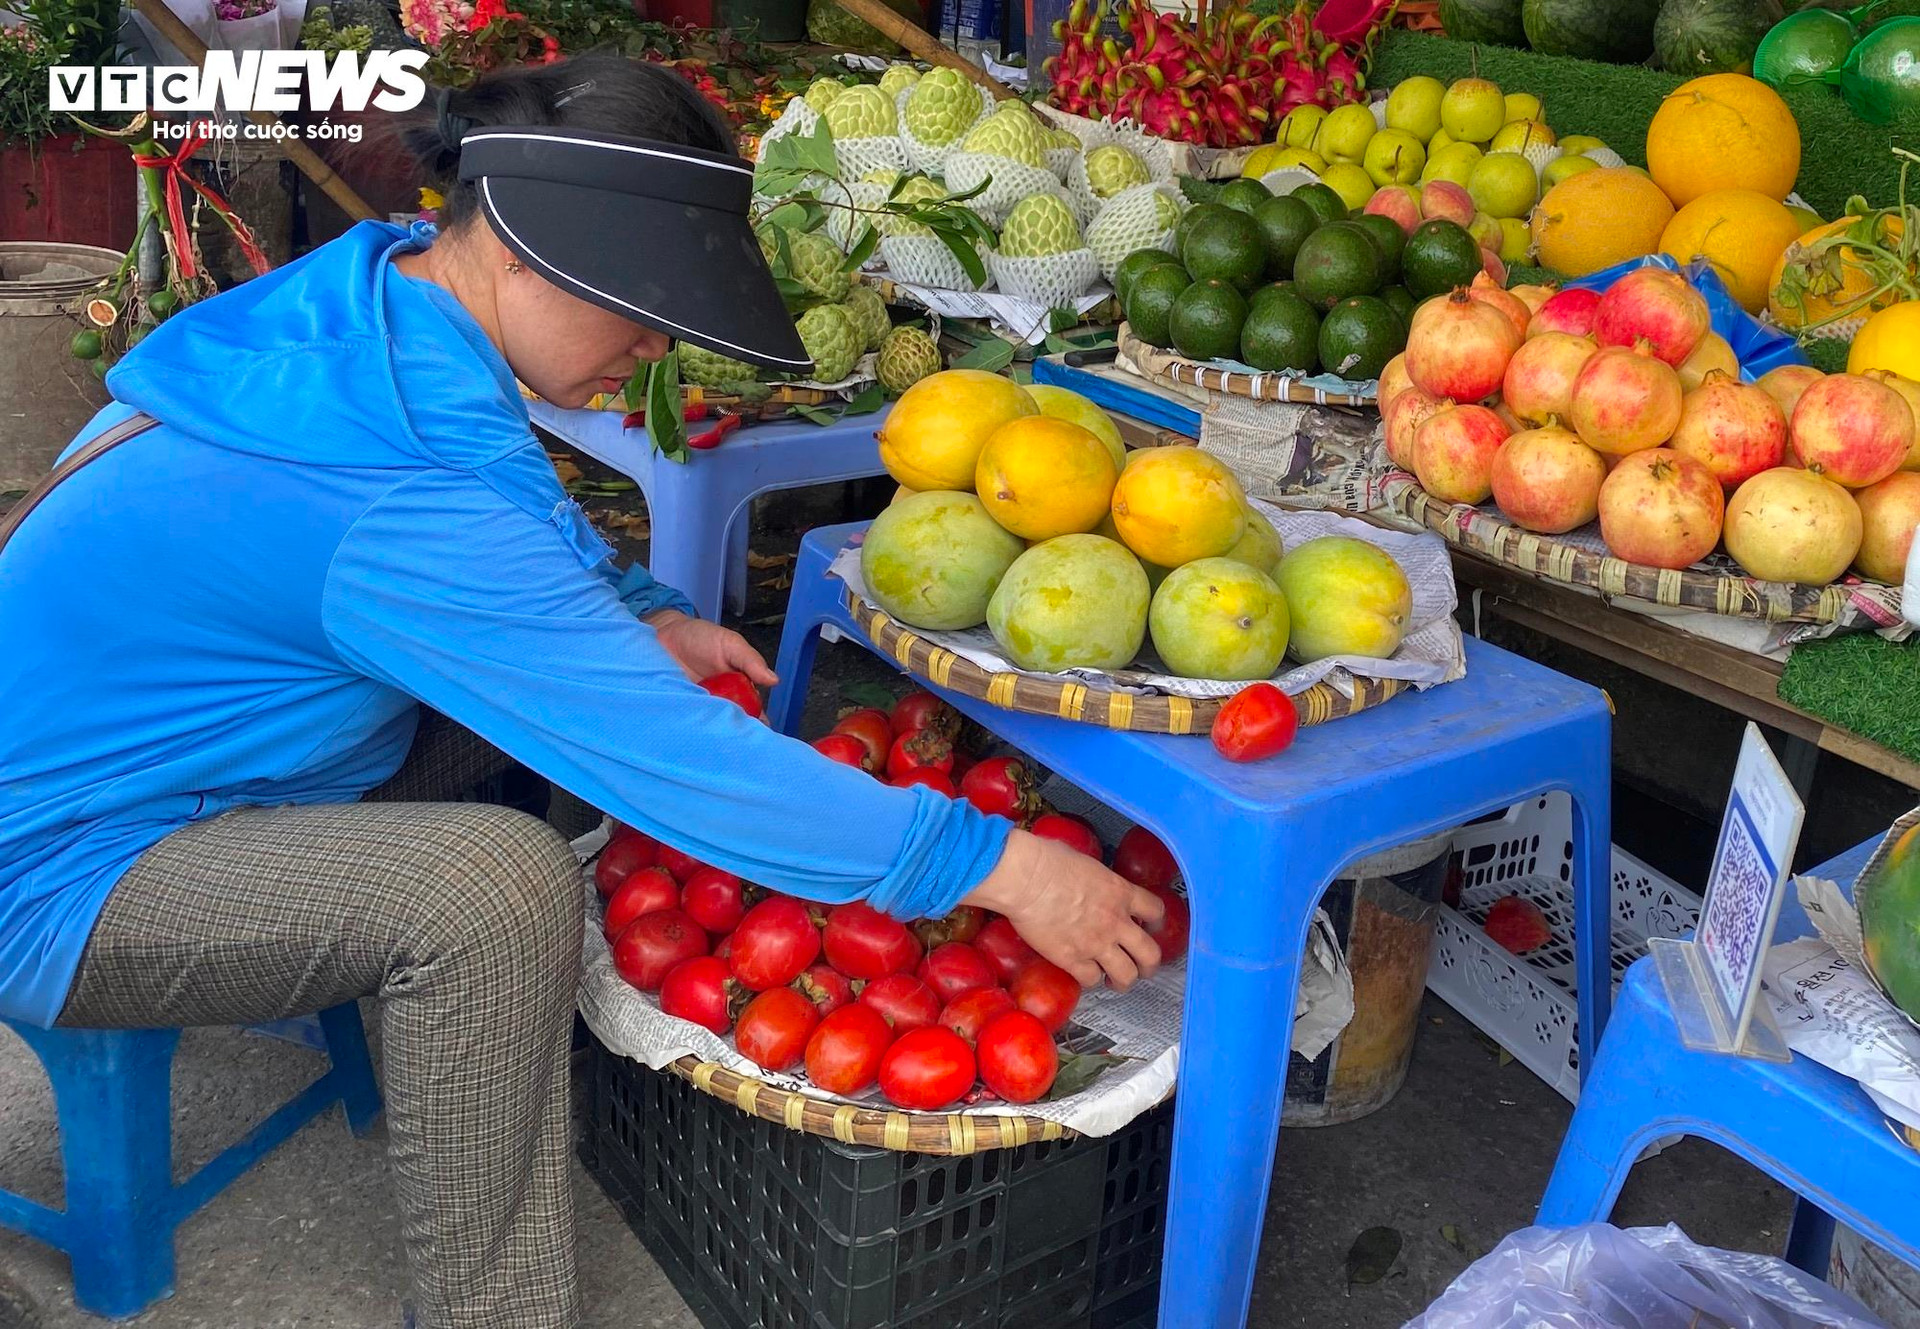 Chị Hoa, bán hàng tại chợ Nam Trung Yên (Cầu Giấy, Hà Nội) cho biết: “Táo Envy hiện tôi đang bán với giá khoảng 160.000 đồng/kg. Giá này gần như là rẻ nhất từ trước đến nay. Hồi đầu năm, loại táo này có giá 250.000 đồng/kg, nghĩa là hiện tại đã giảm 90.000 đồng/kg